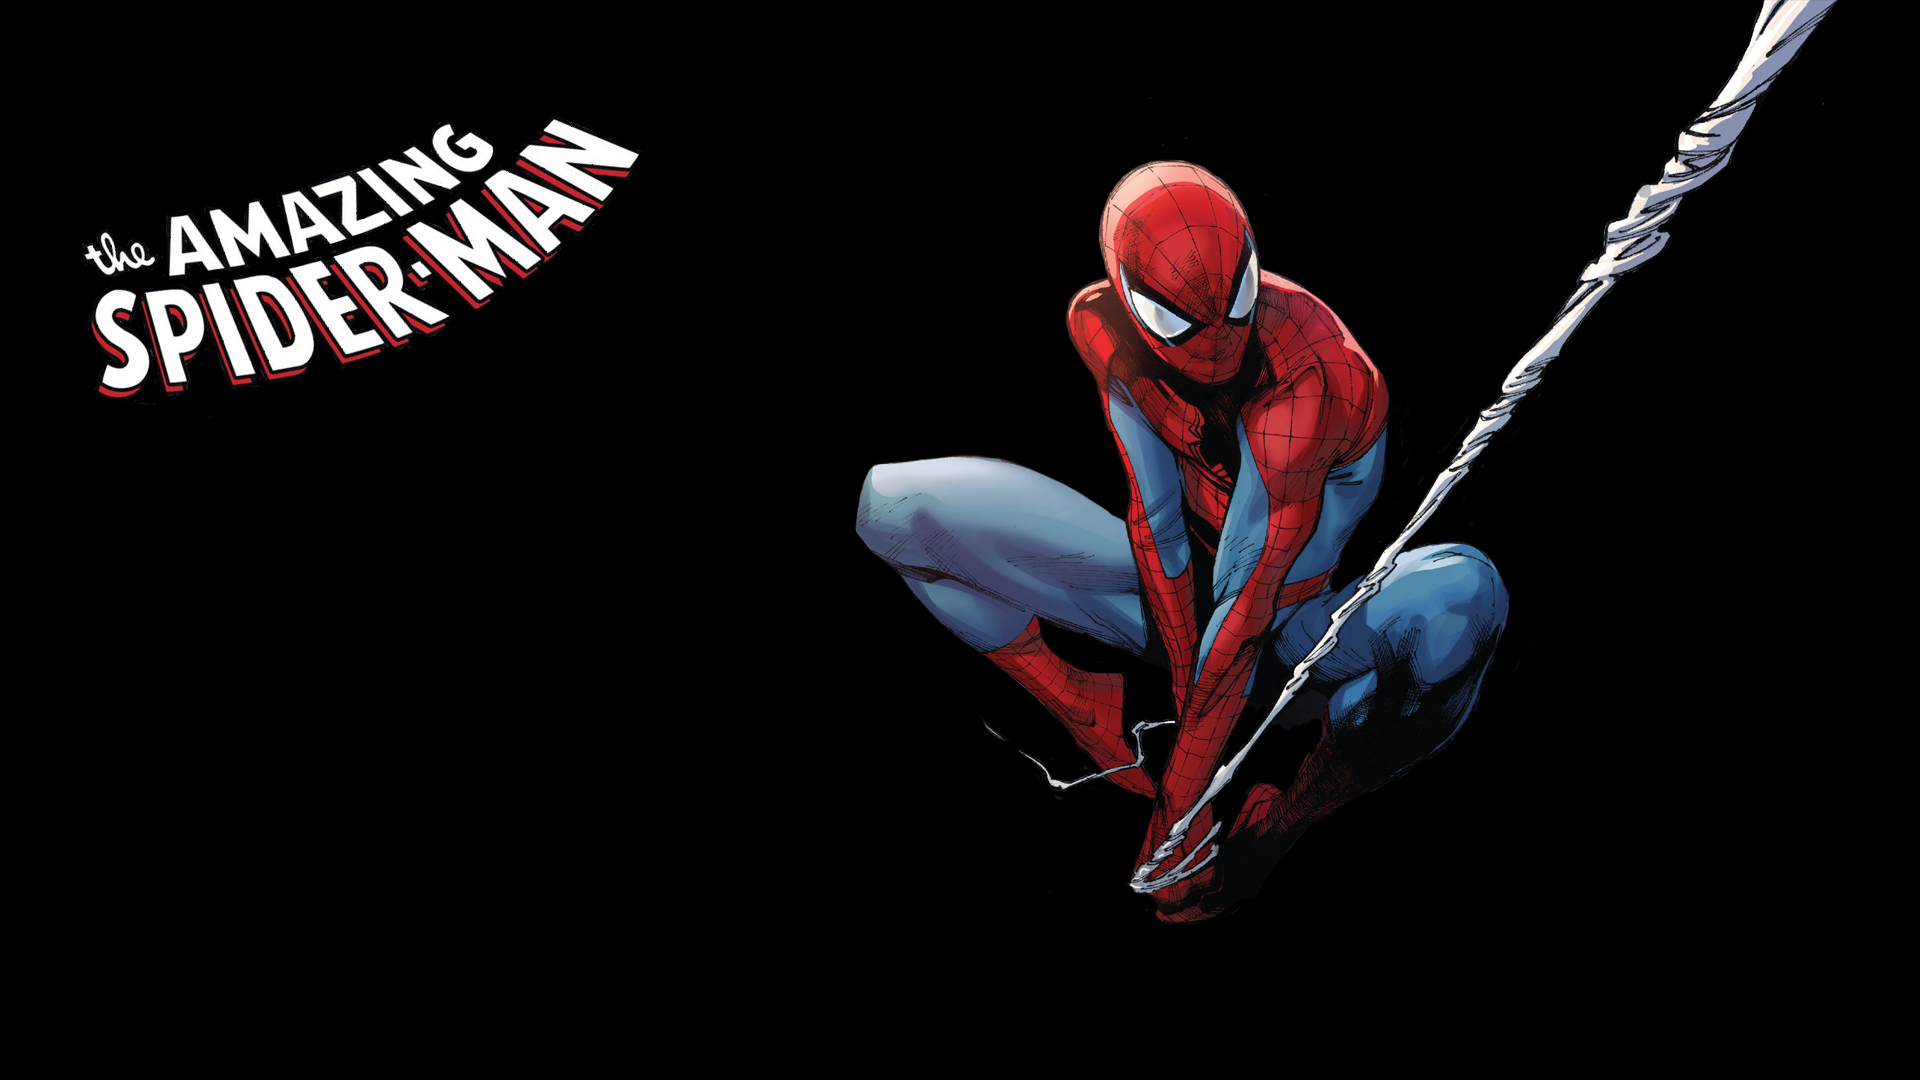 fond d'écran spiderman hd,homme araignée,personnage fictif,corps humain,super héros,conception graphique